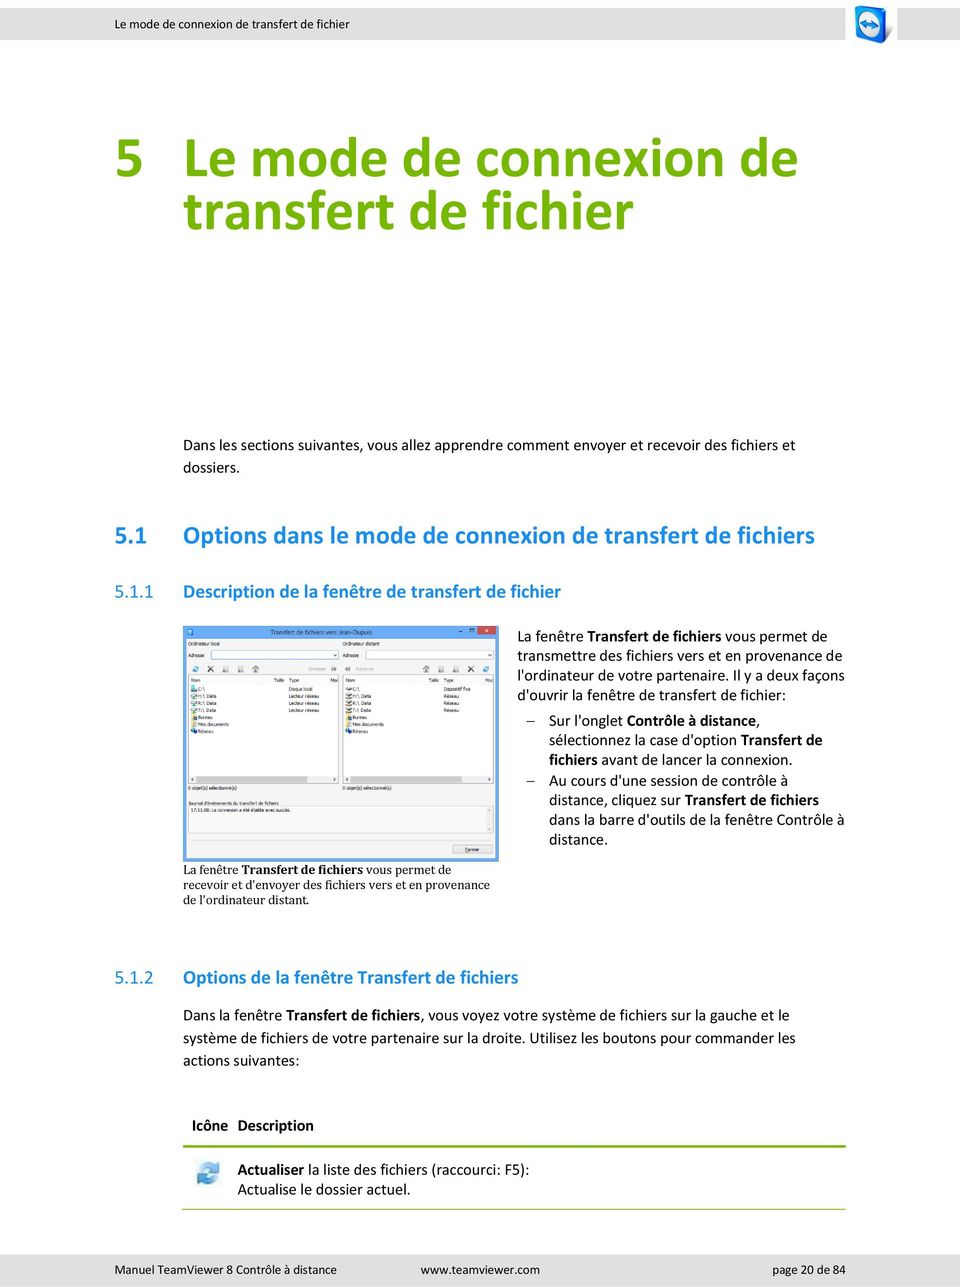 Il y a deux façons d'ouvrir la fenêtre de transfert de fichier: Sur l'onglet Contrôle à distance, sélectionnez la case d'option Transfert de fichiers avant de lancer la connexion.